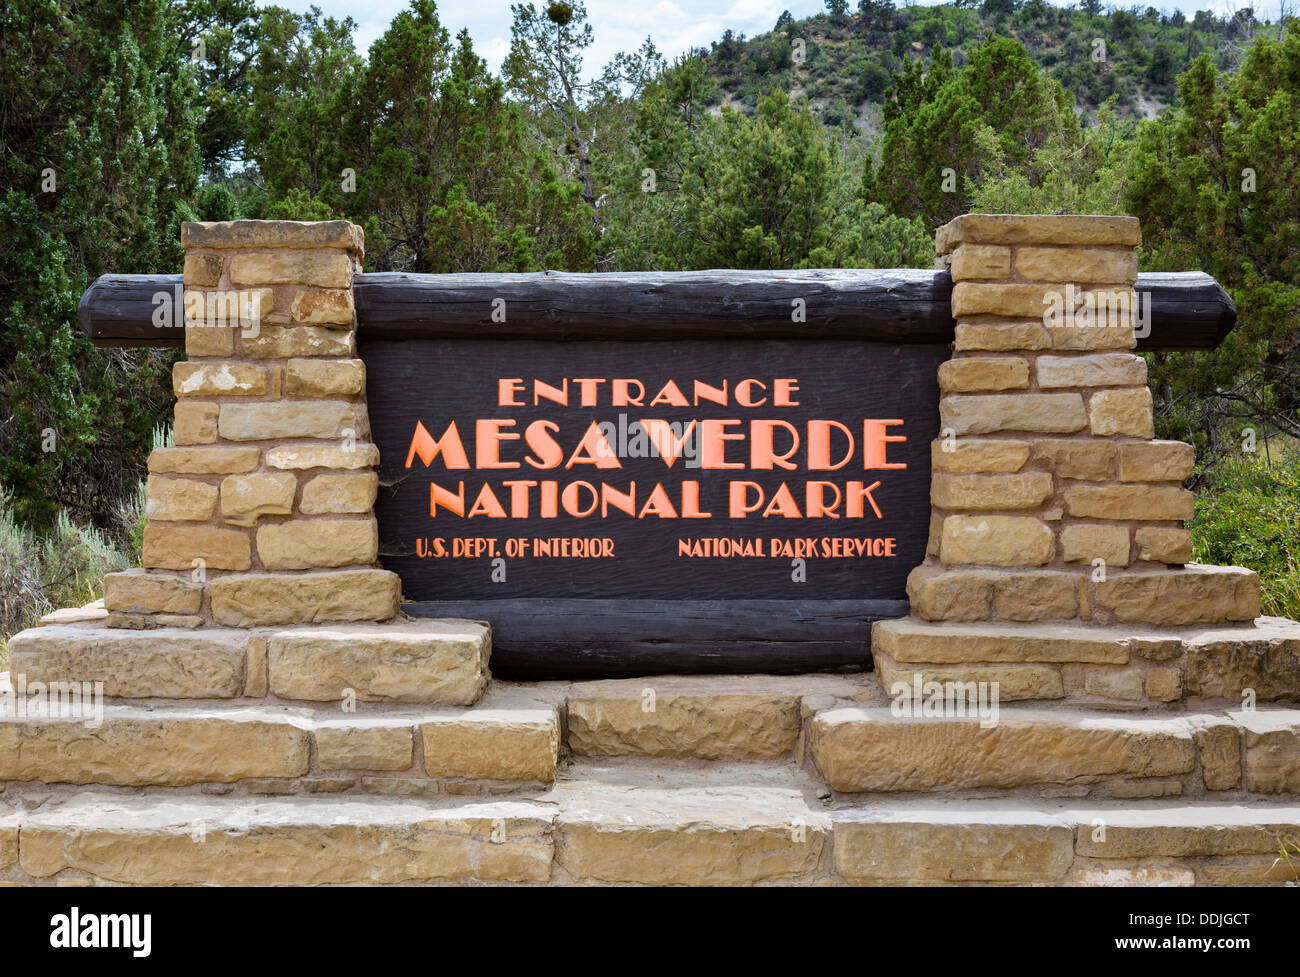 Entrance sign to Mesa Verde National Park, Colorado, USA Stock Photo